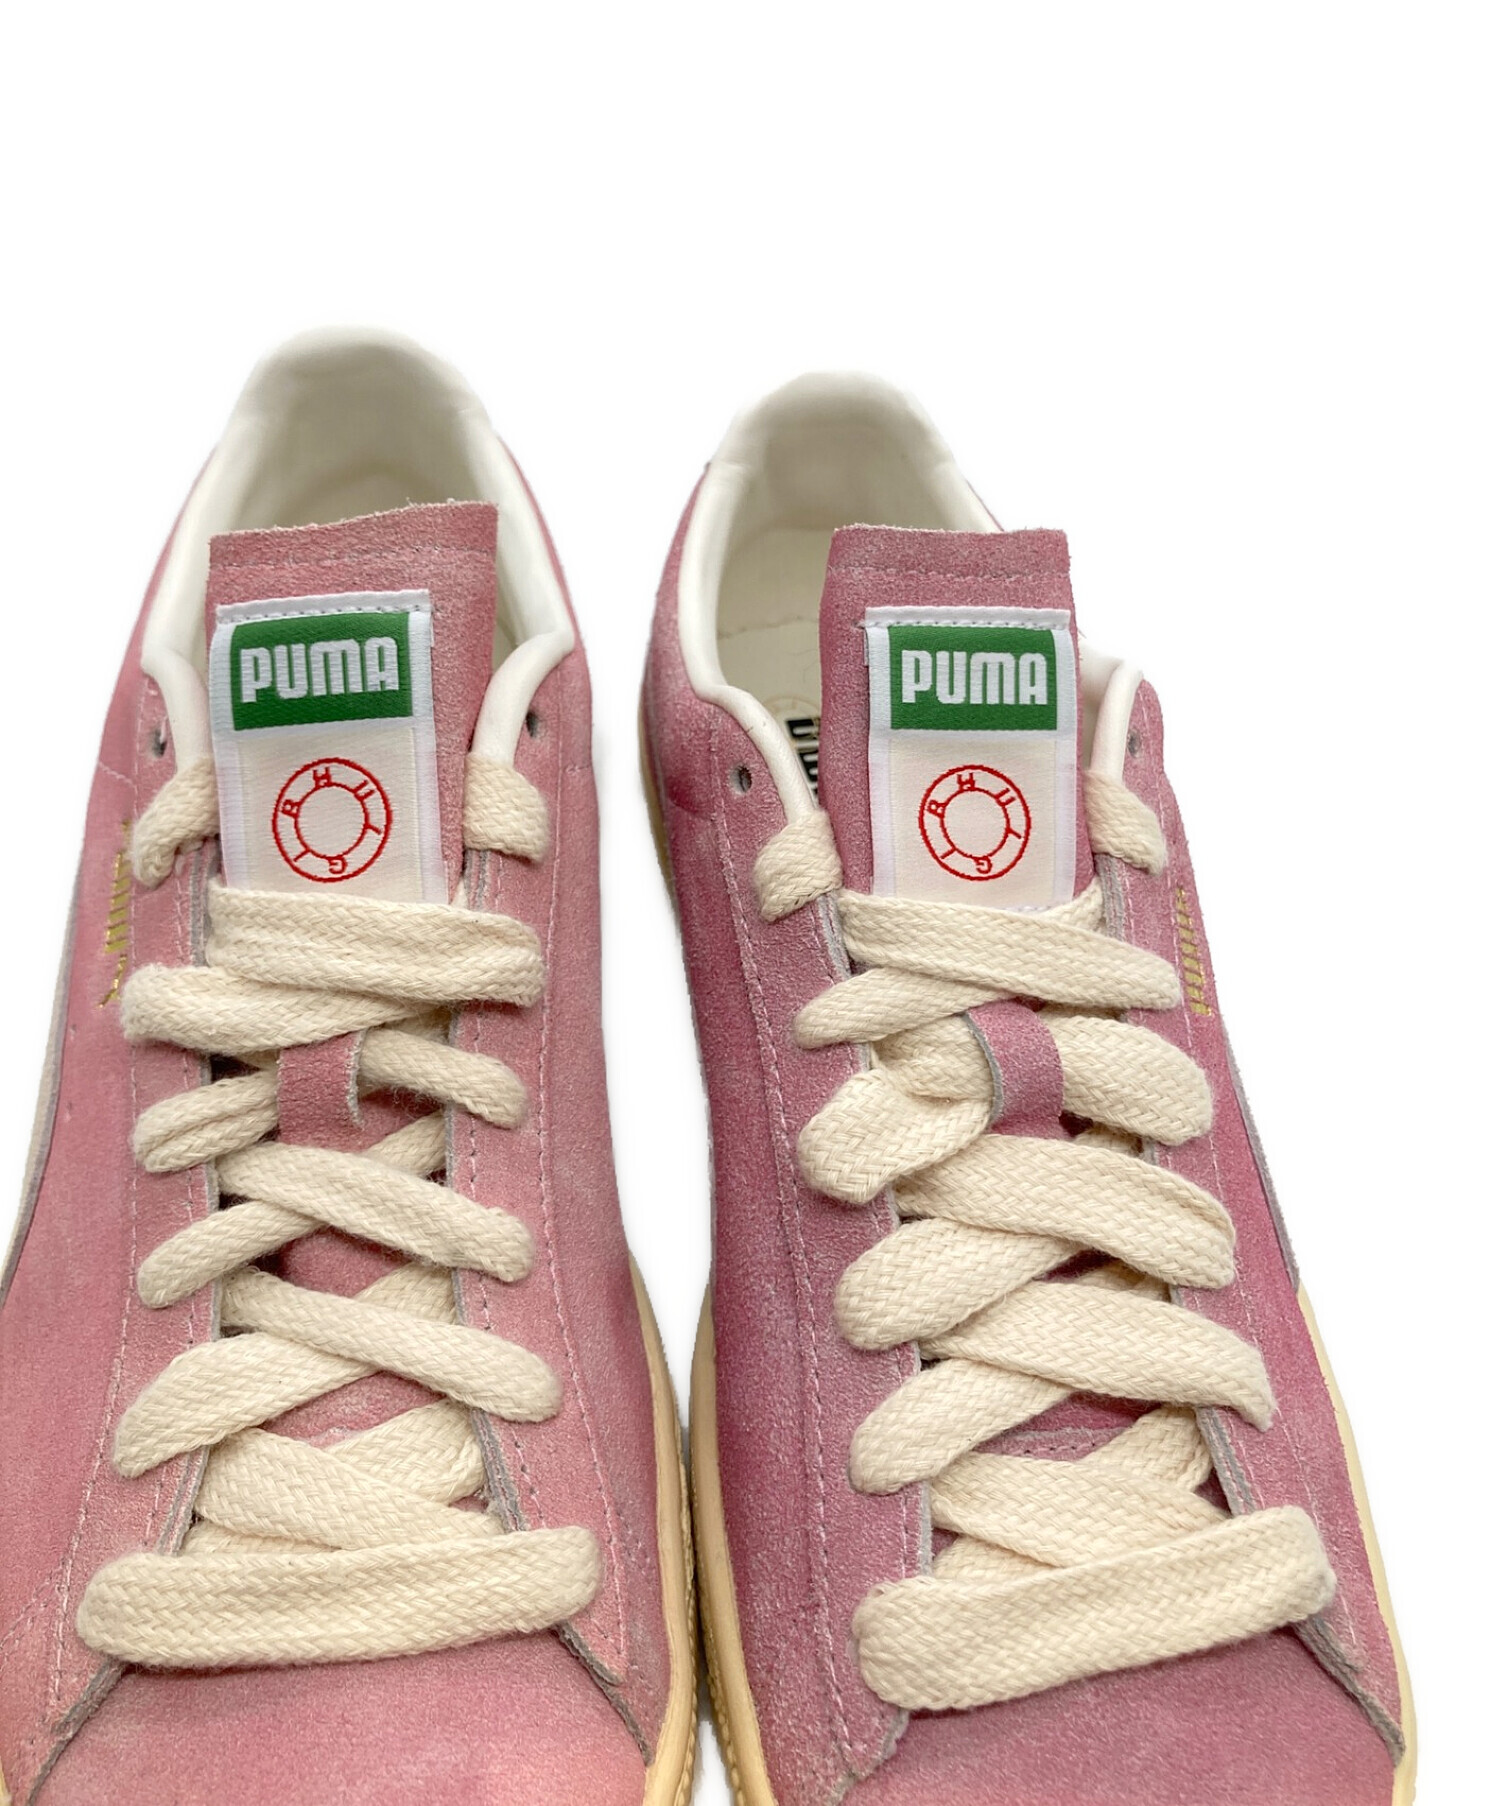 PUMA (プーマ) RHUIGI (ルイージ) SUEDE BBOY ピンク サイズ:26.5 未使用品